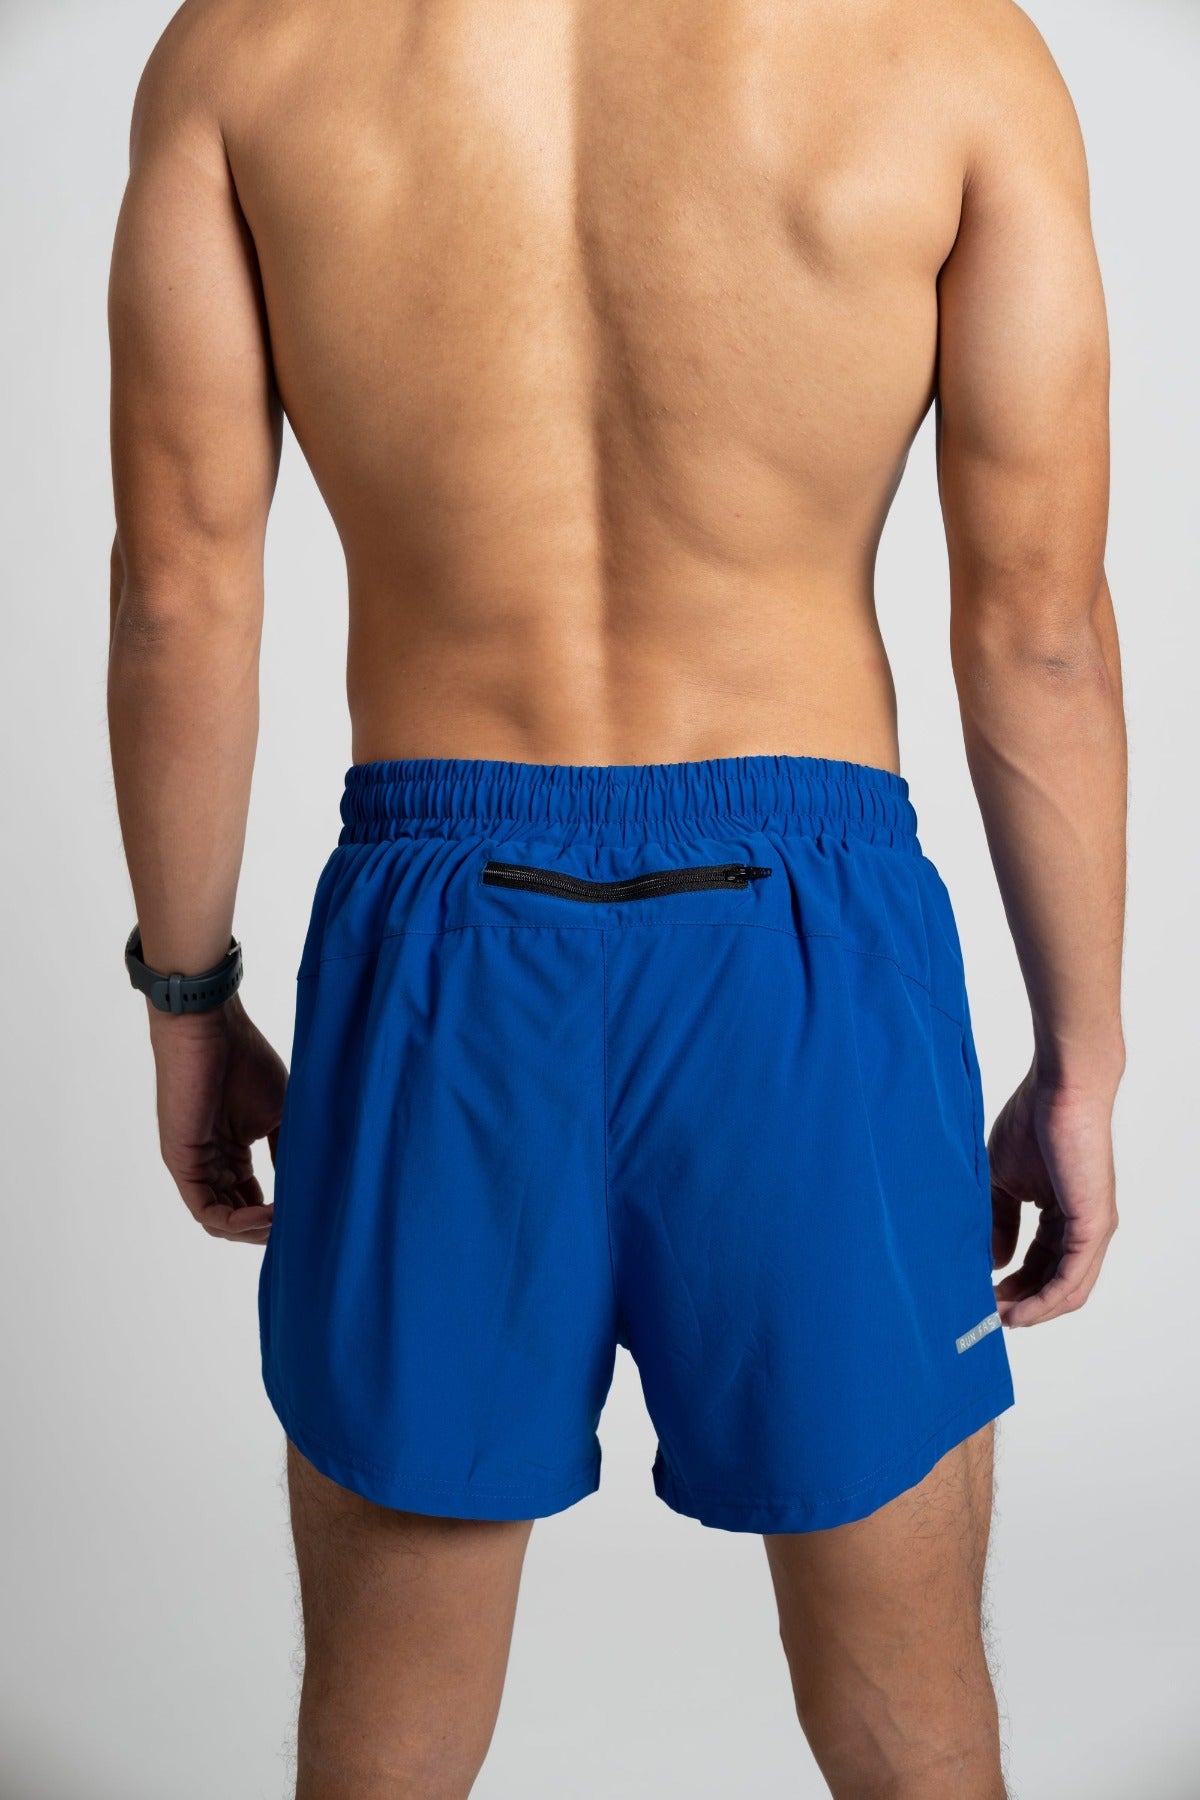 Men's blue running shorts, back zip pocket